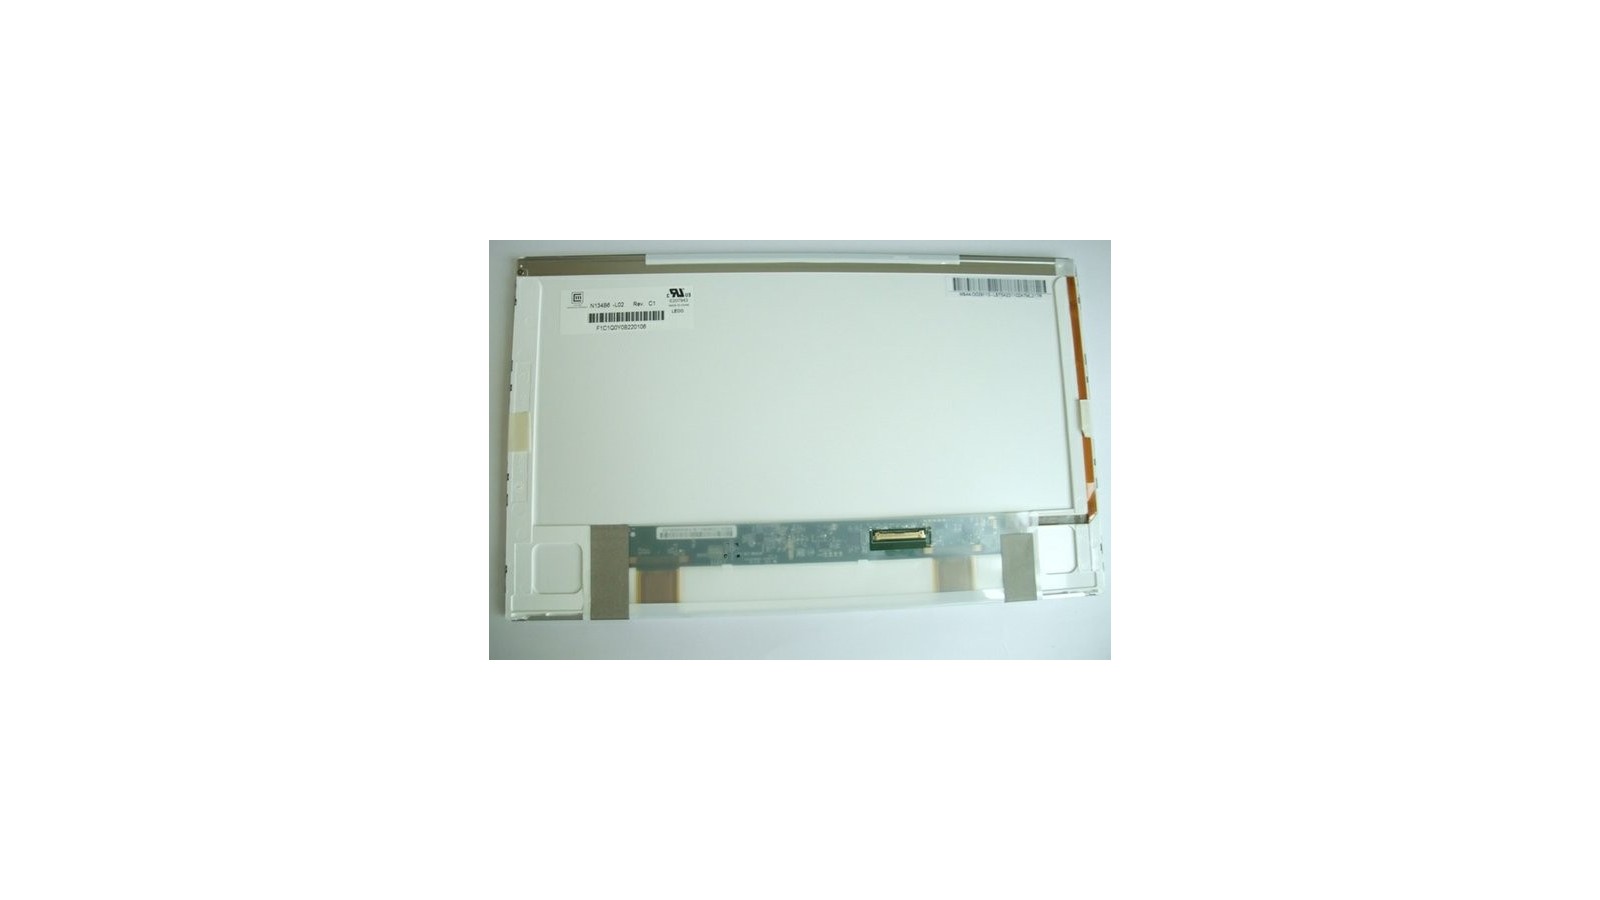 Display LCD Schermo 13,4 Led compatibile con Hp Pavilion DV3-2100